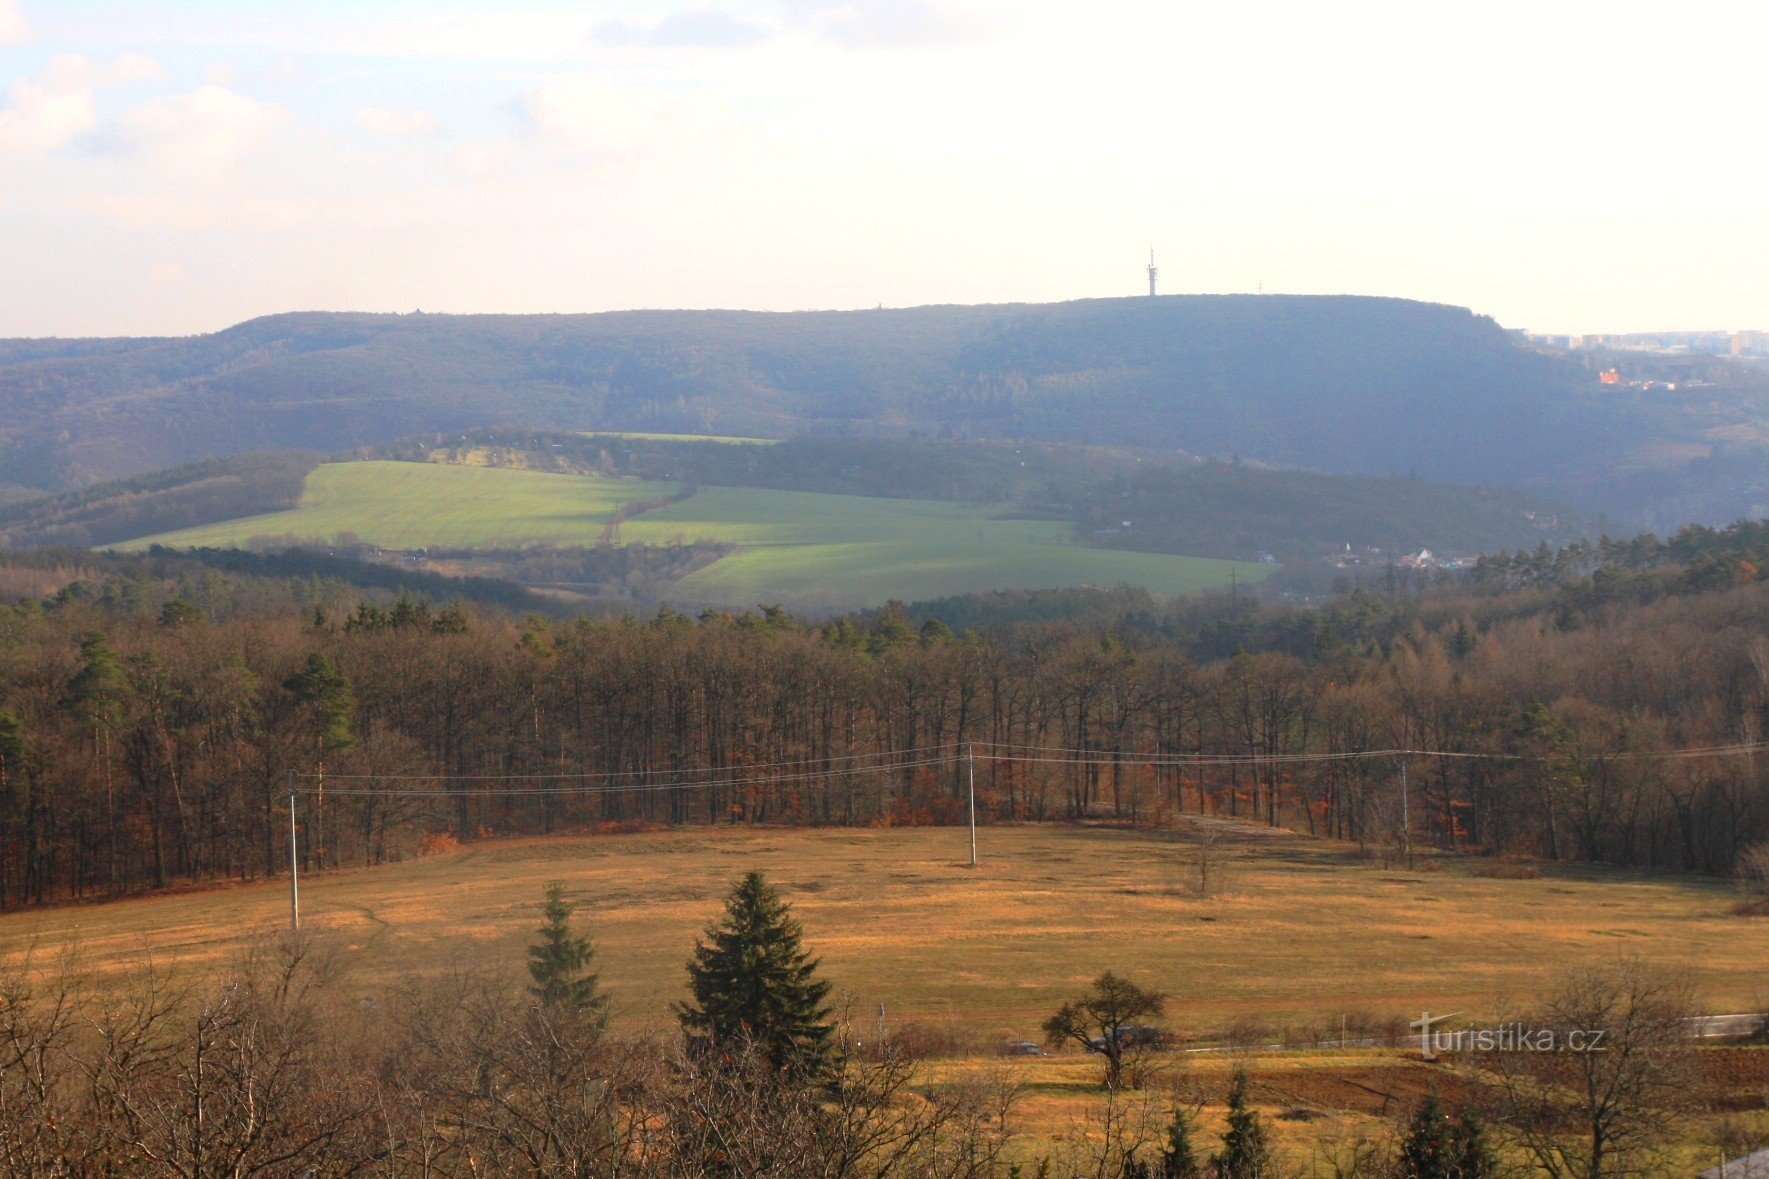 Płaskowyż krasowy Hády z górnej części miejscowości Bílovice nad Svitavou